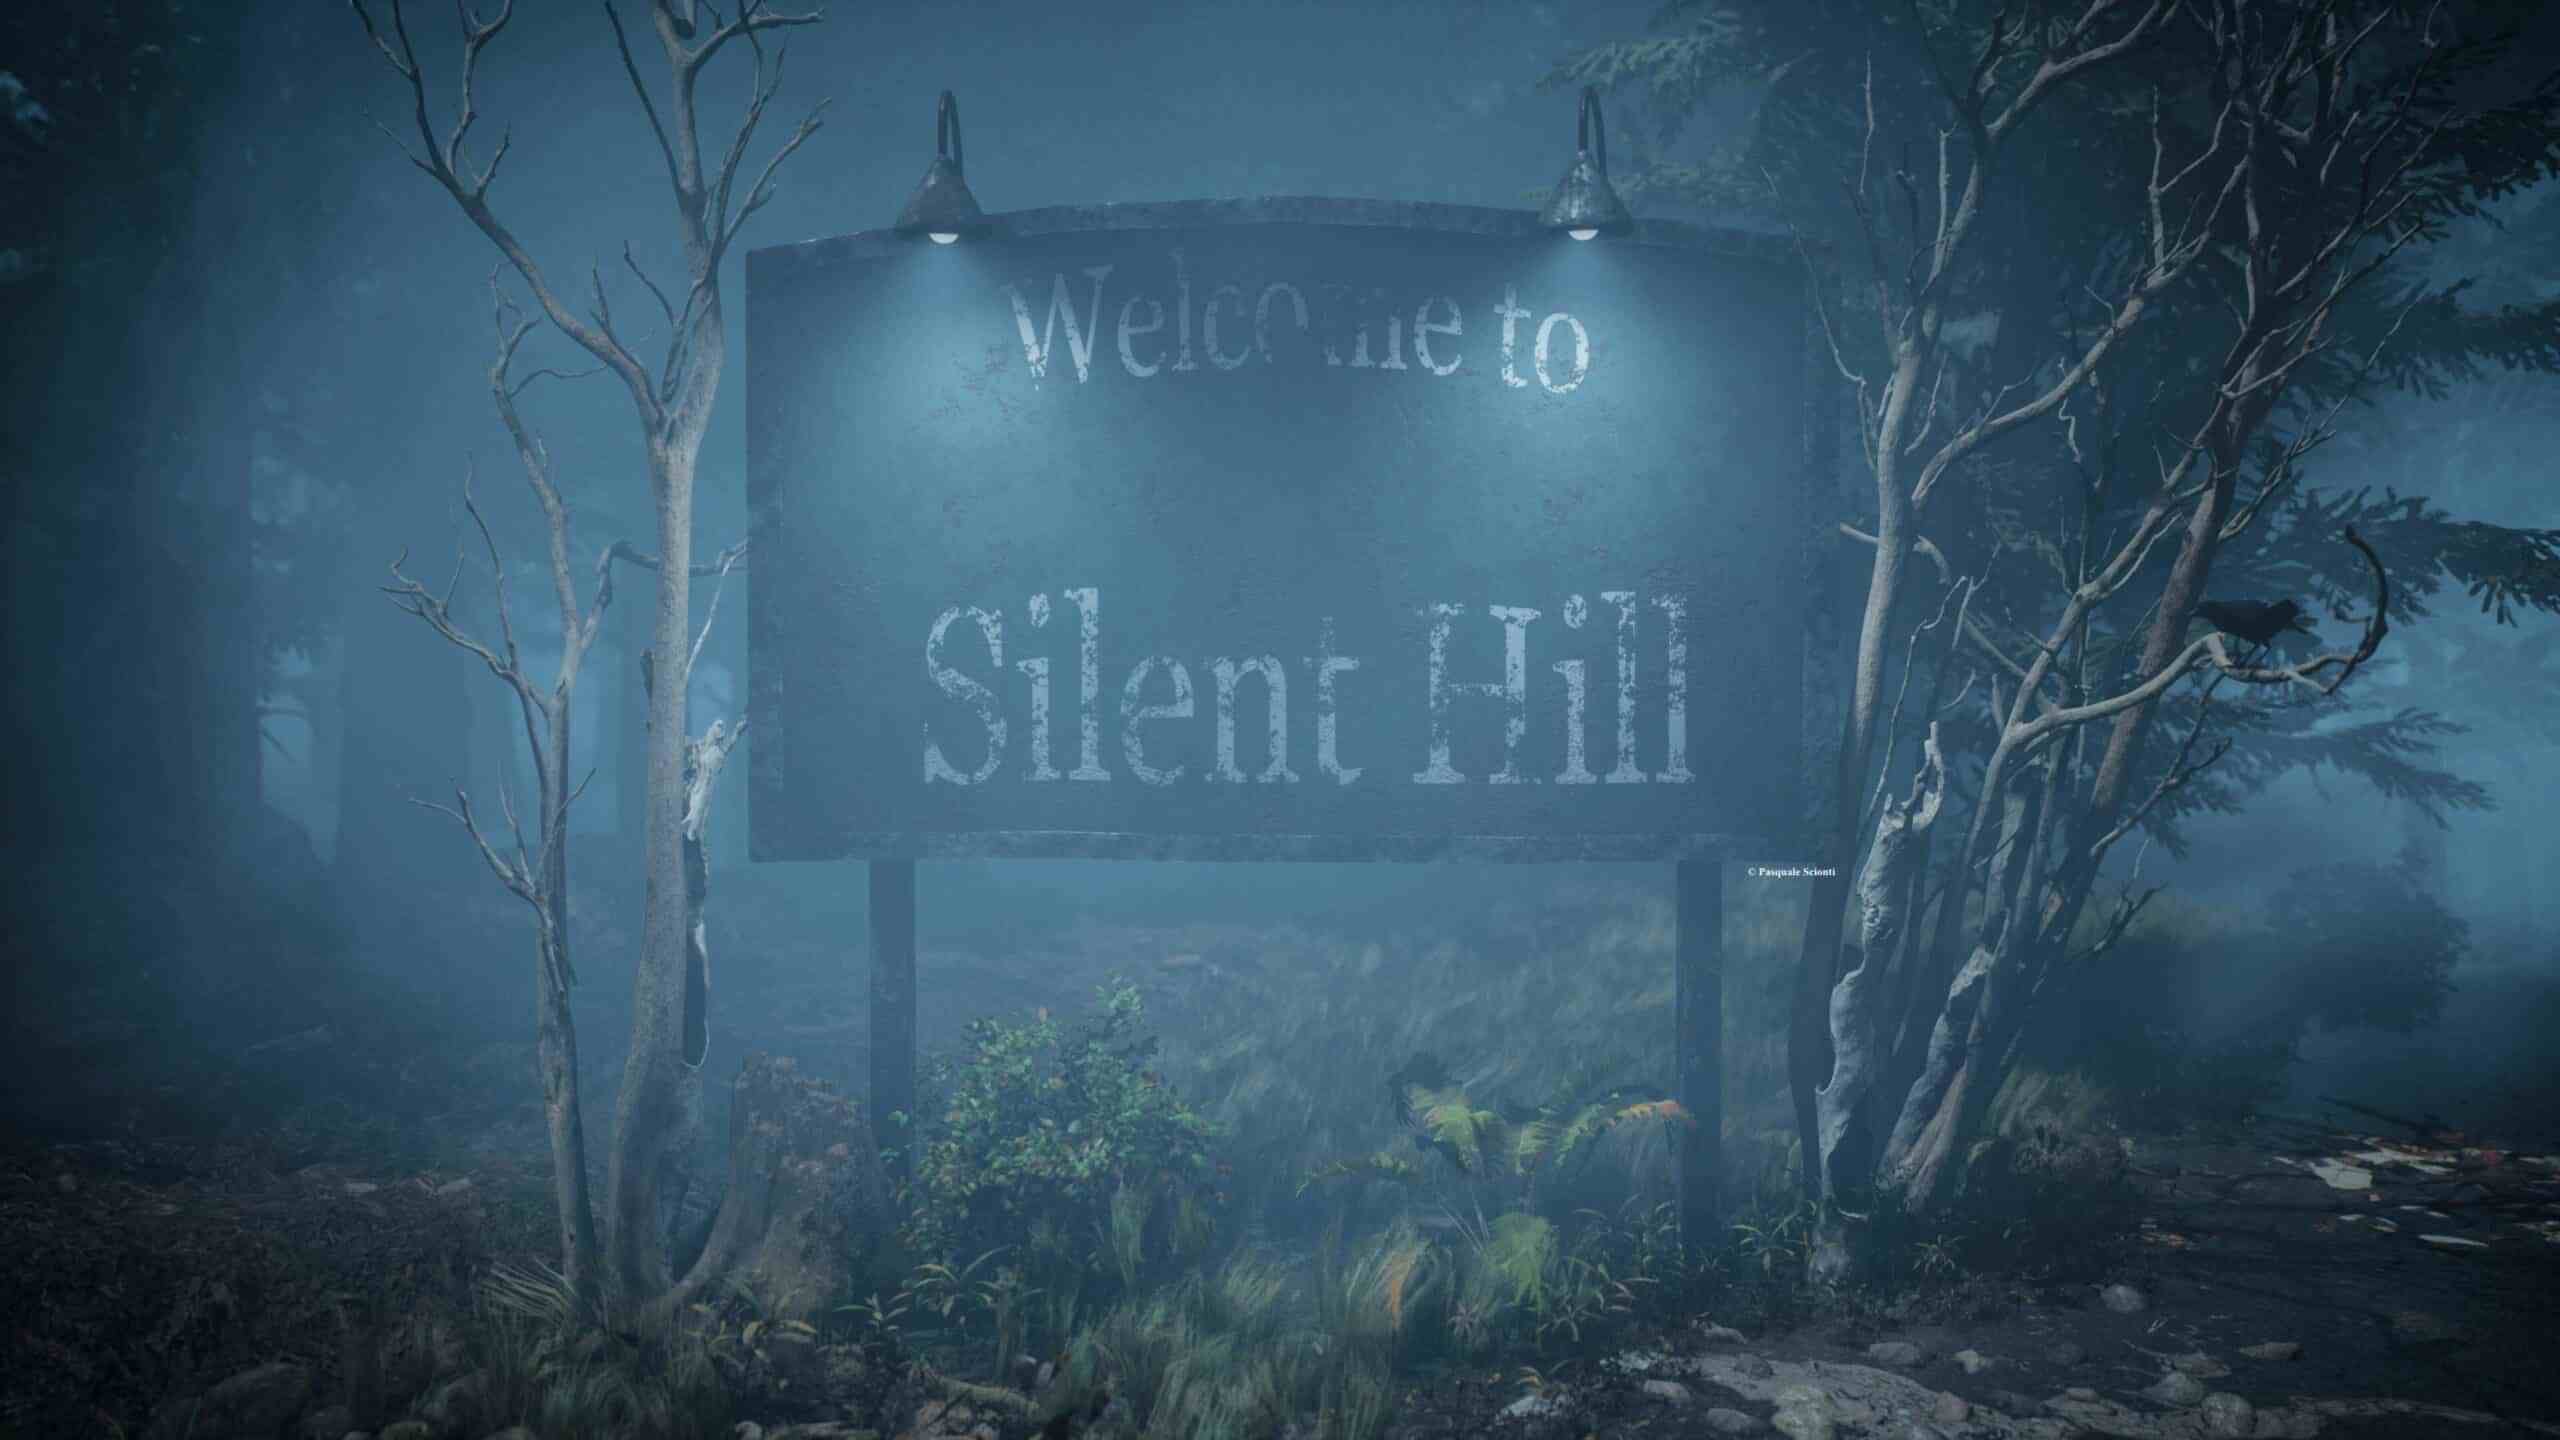 Her şeyin başladığı yer burası, Silent Hill 1.